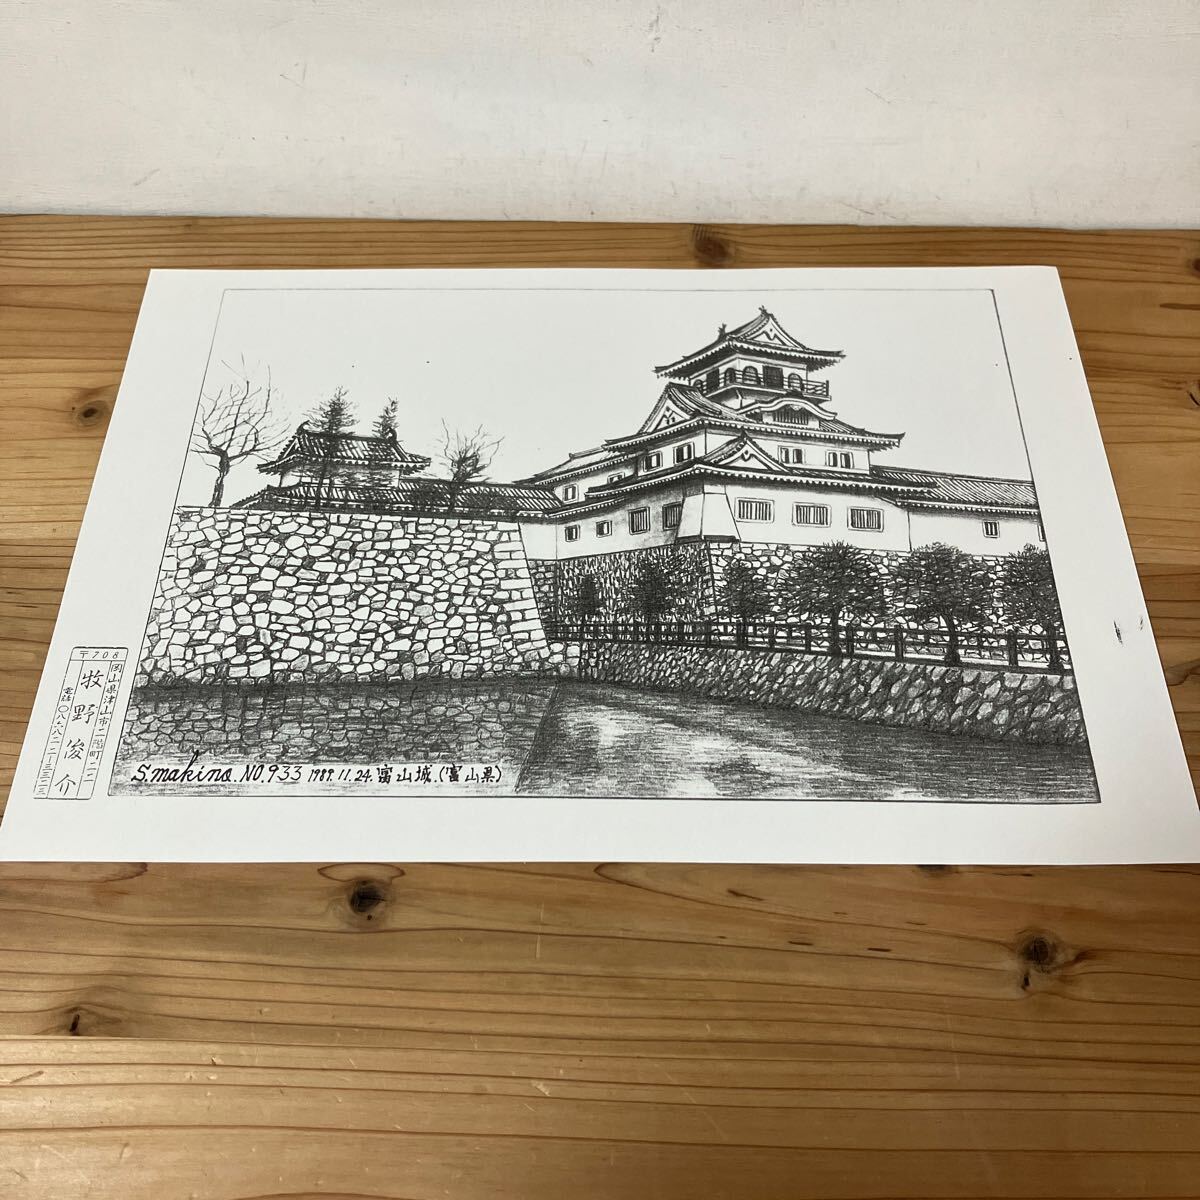 ماو H0305 [ماكينو شونسوكي, قلعة توياما رقم 933, رسم بالقلم الرصاص مطبوع] 1889, عمل فني, تلوين, الرسم بقلم الرصاص, الفحم الرسم